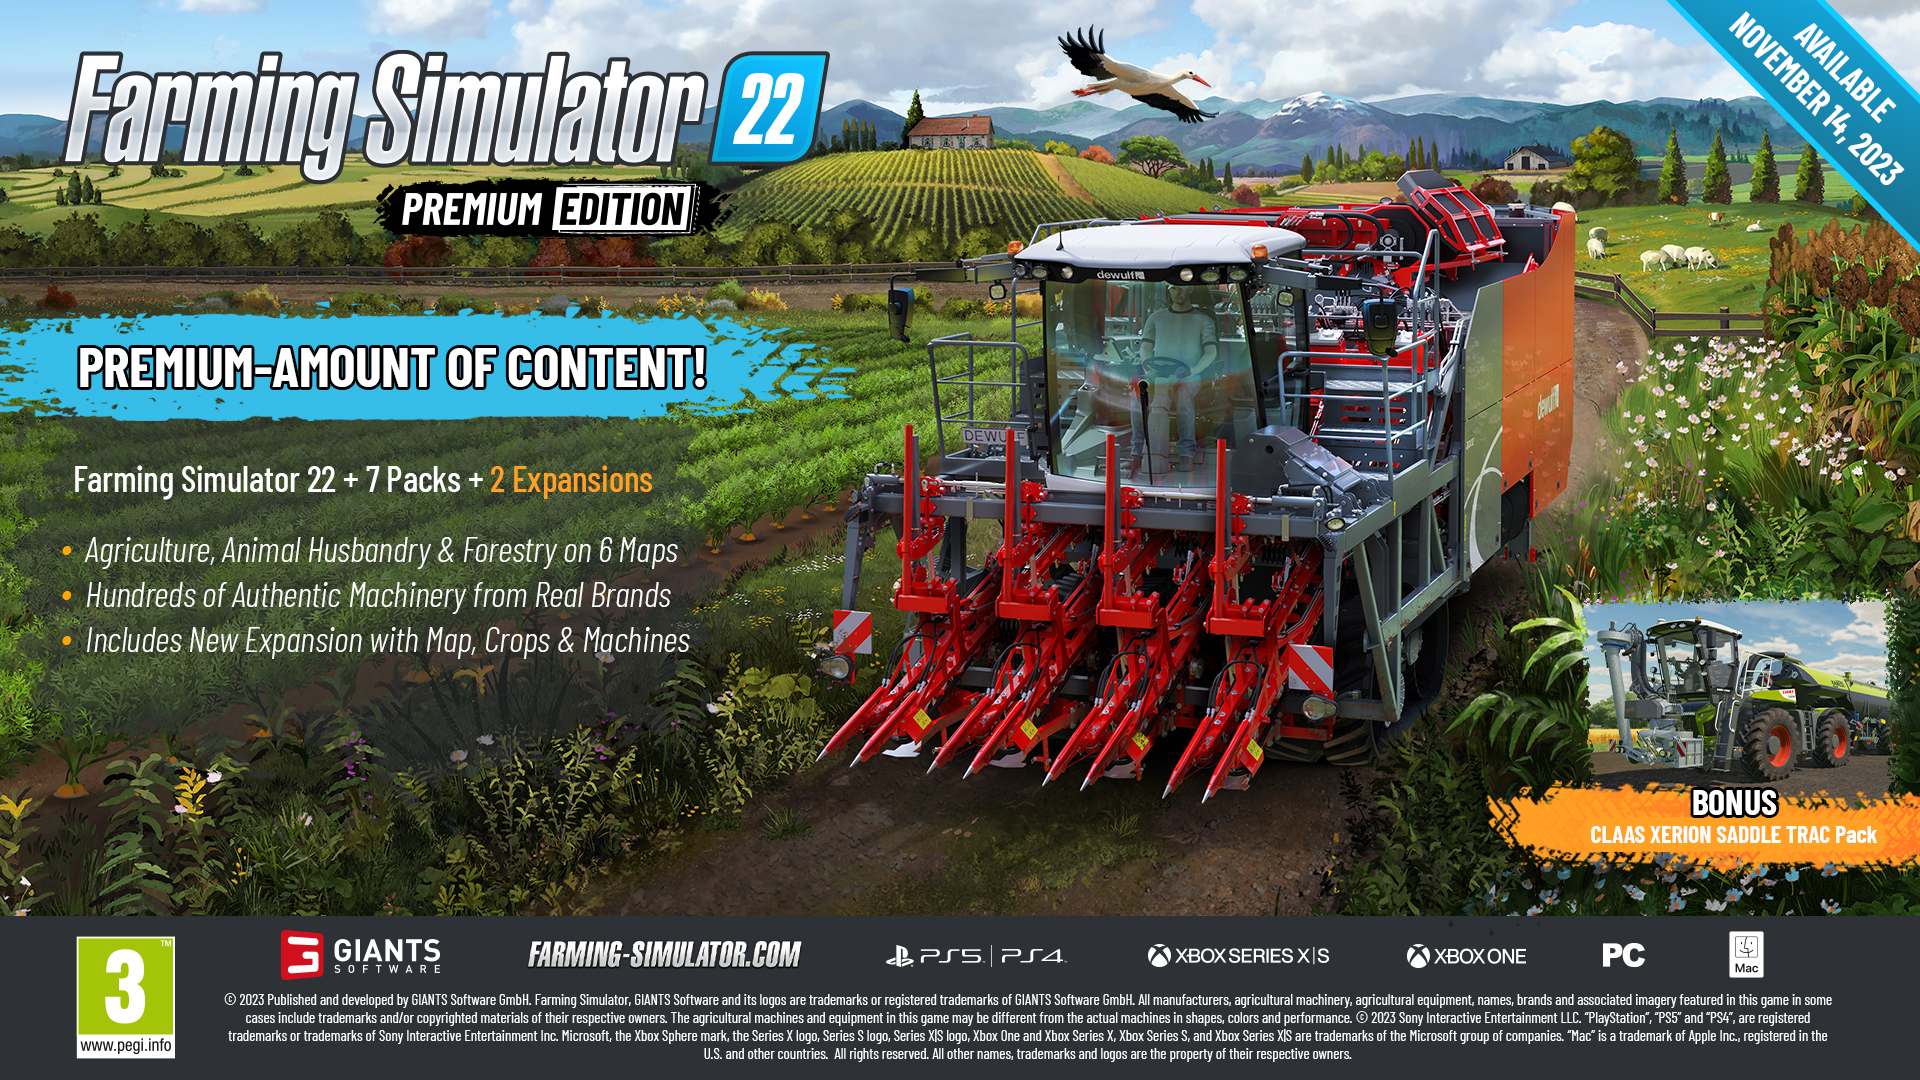 Premium Expansion/Farming Simulator 22